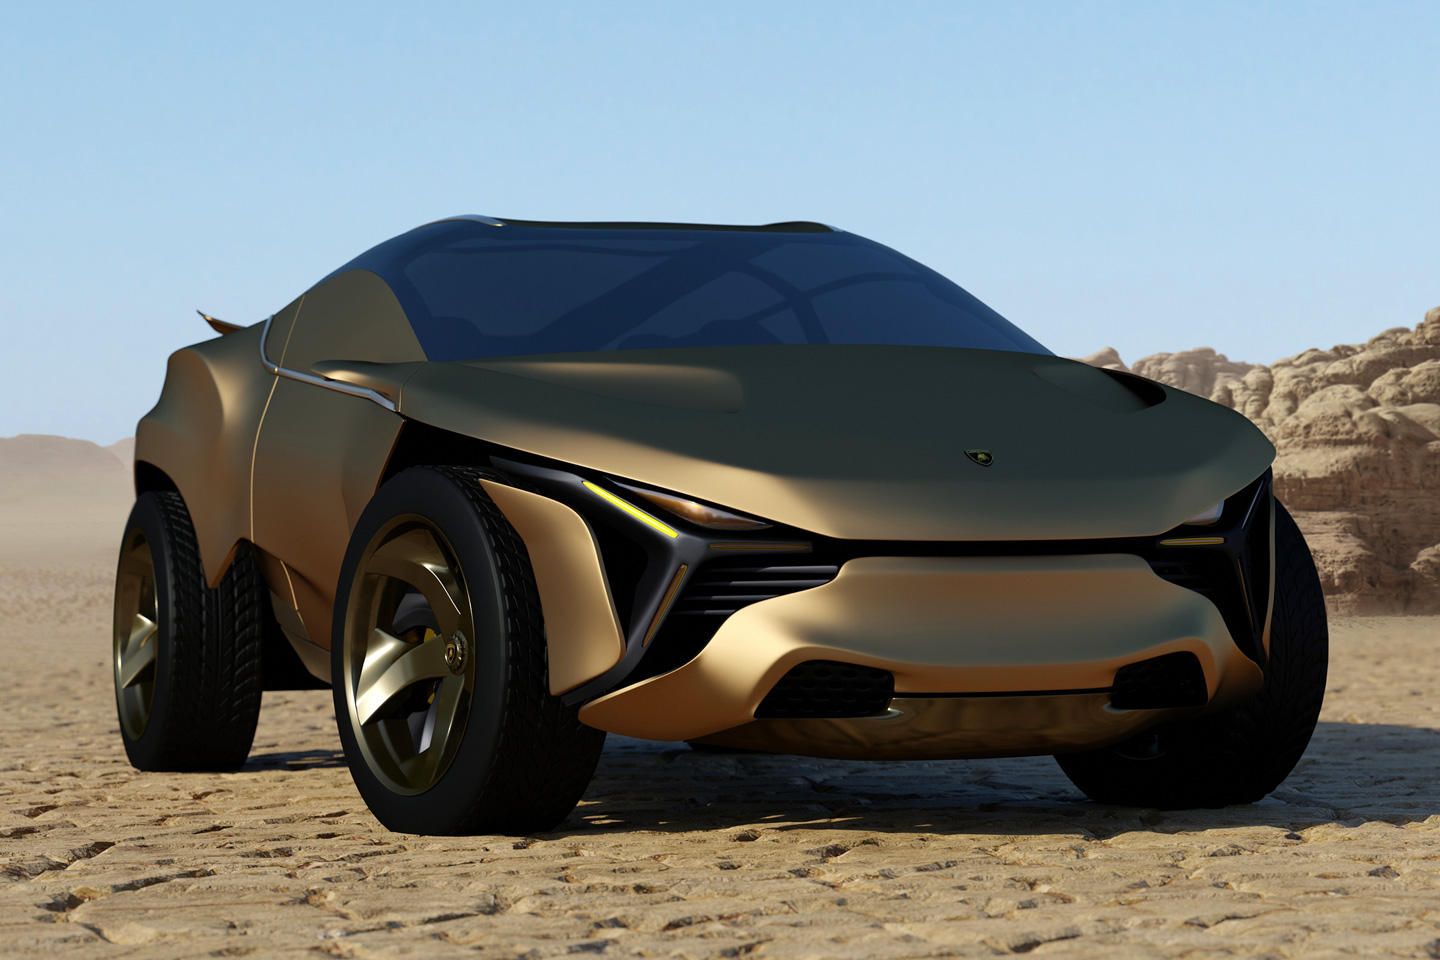 This Lamborghini SUV concept amplifies the Urus design language to create a true raging bull